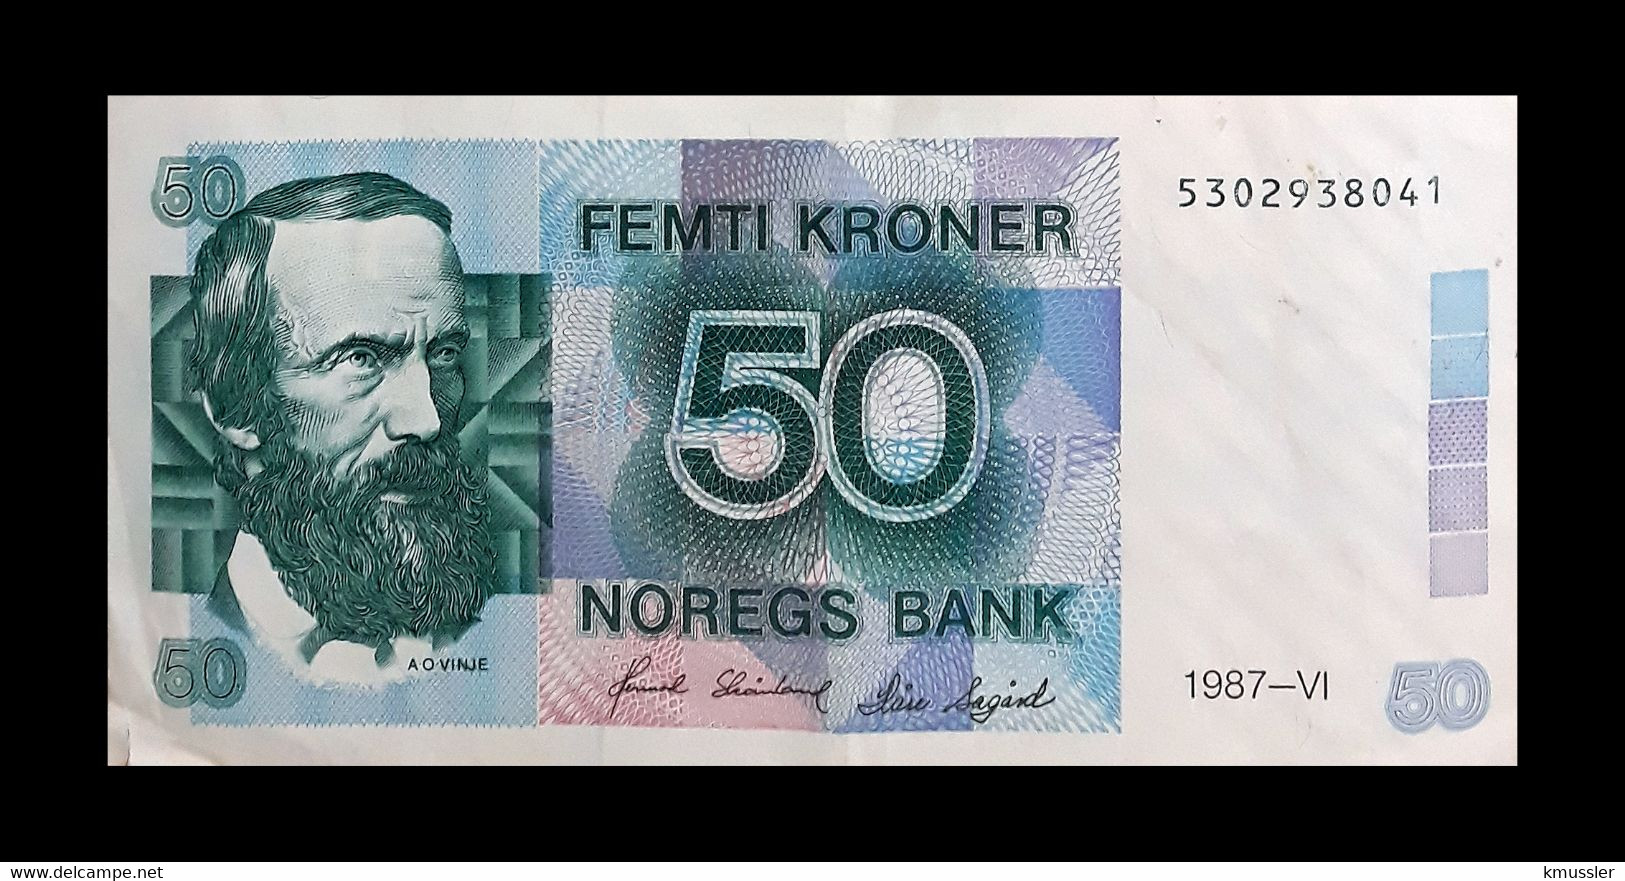 # # # Banknote Norwegen (Norway) 50 Kroner 1986 UNC # # # - Norwegen